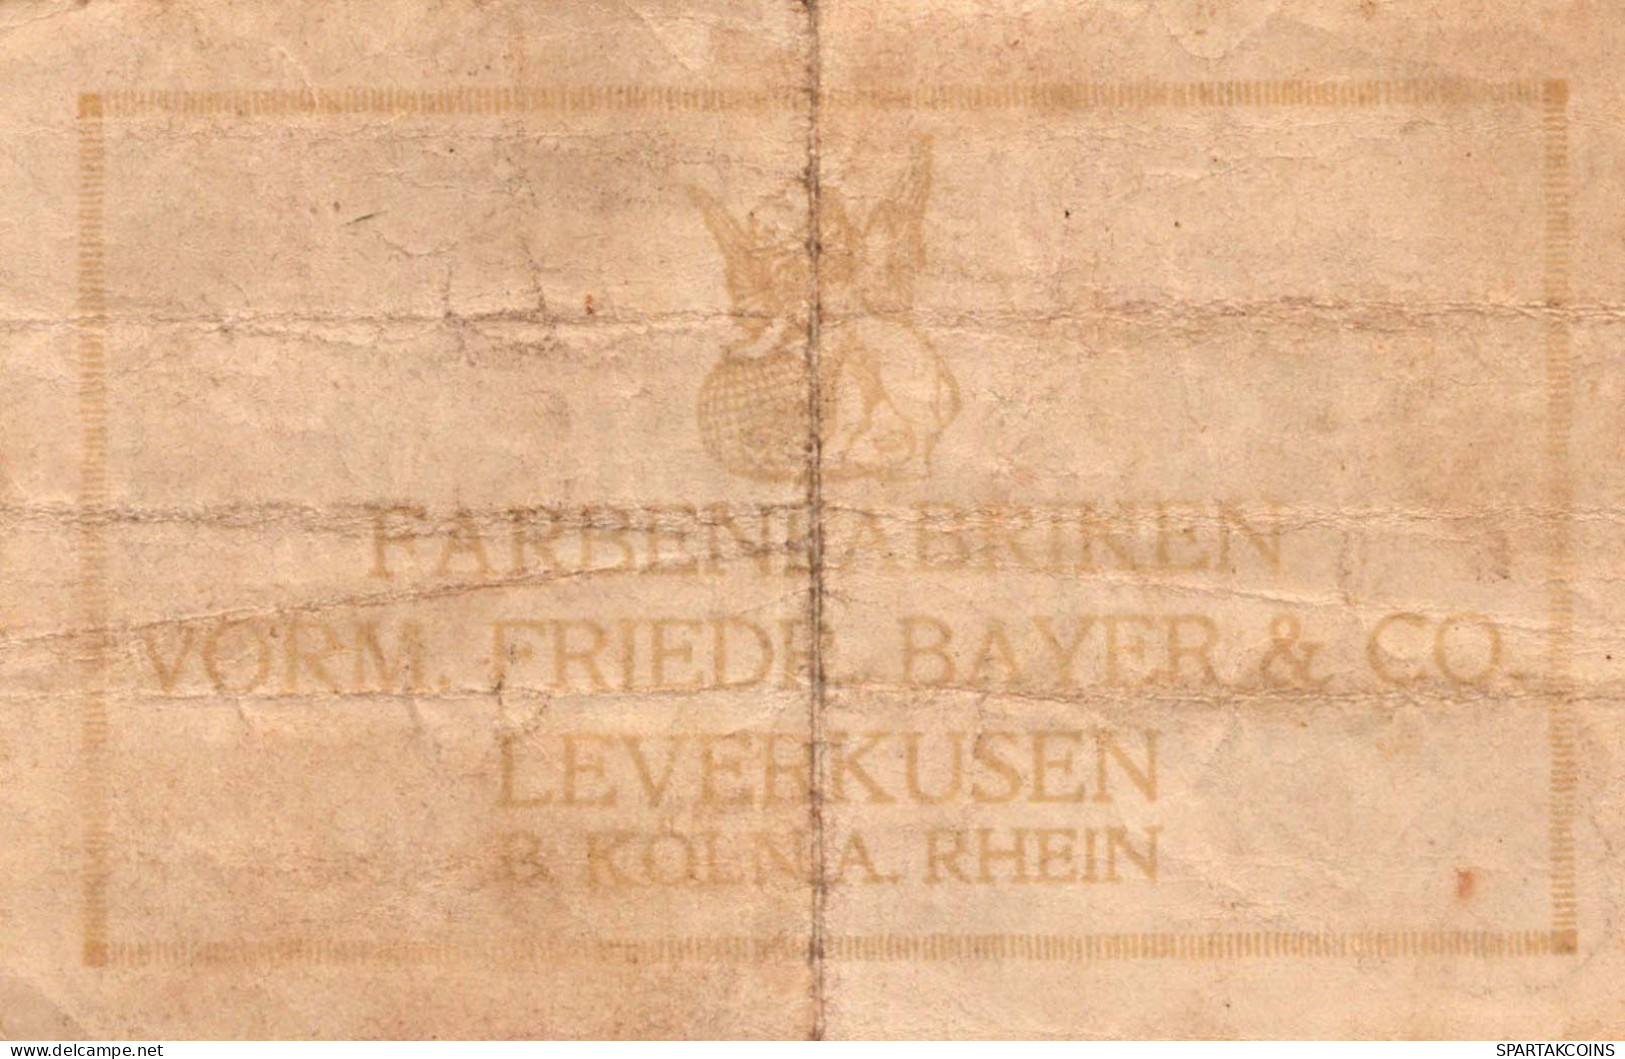 1 MILLION MARK 1923 Stadt LEVERKUSEN Rhine DEUTSCHLAND Papiergeld Banknote #PK812 - [11] Local Banknote Issues